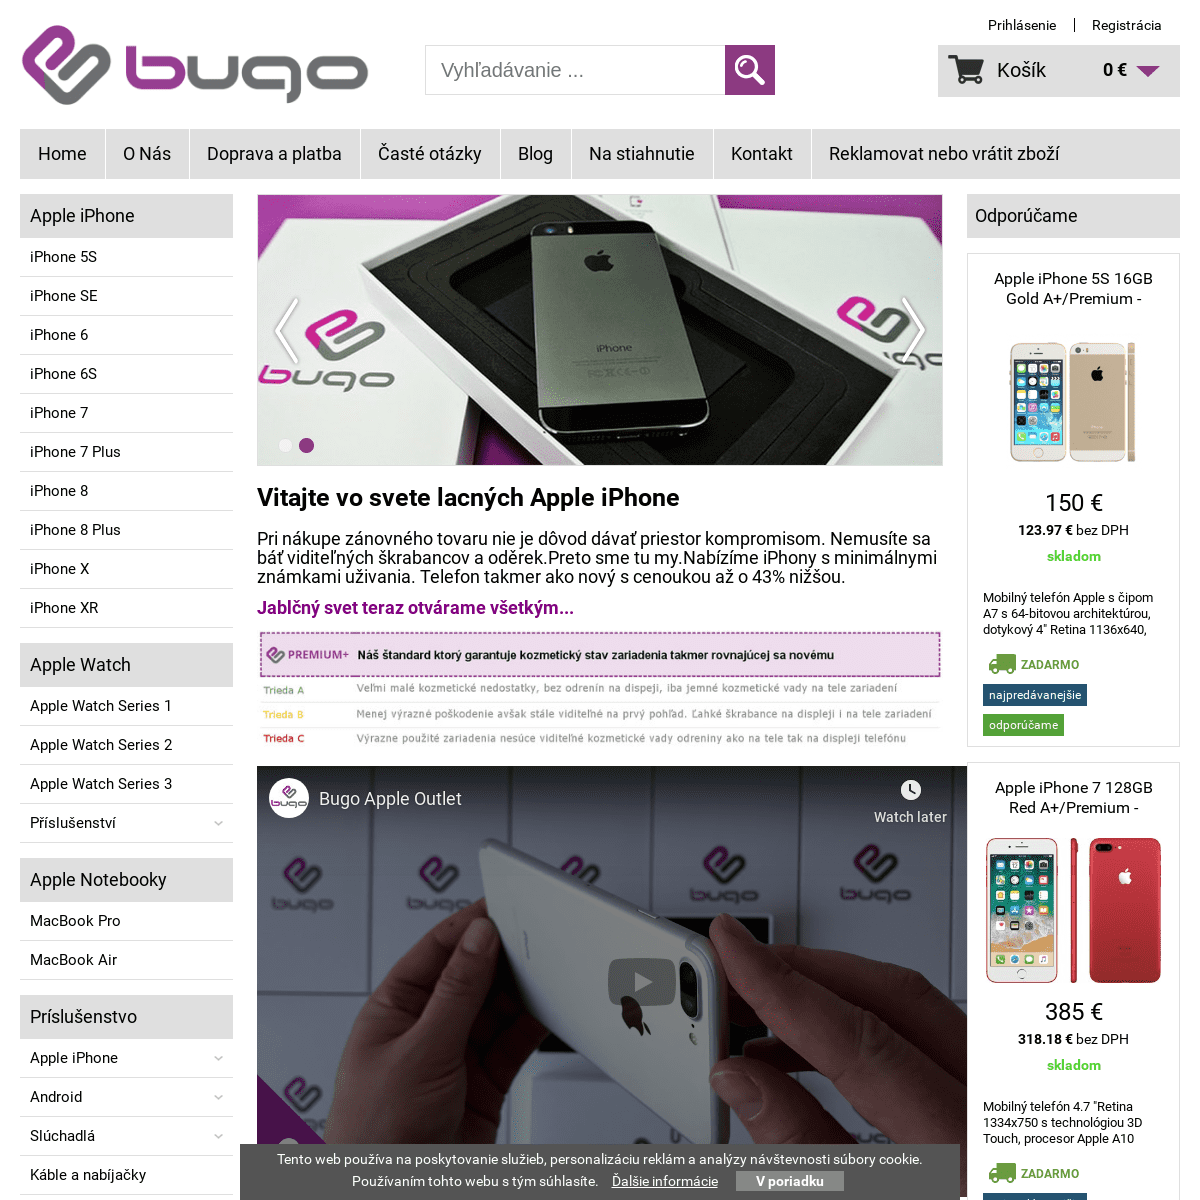 Bugoshop.sk - Prémiové iPhony so zľavou niekoľko stoviek